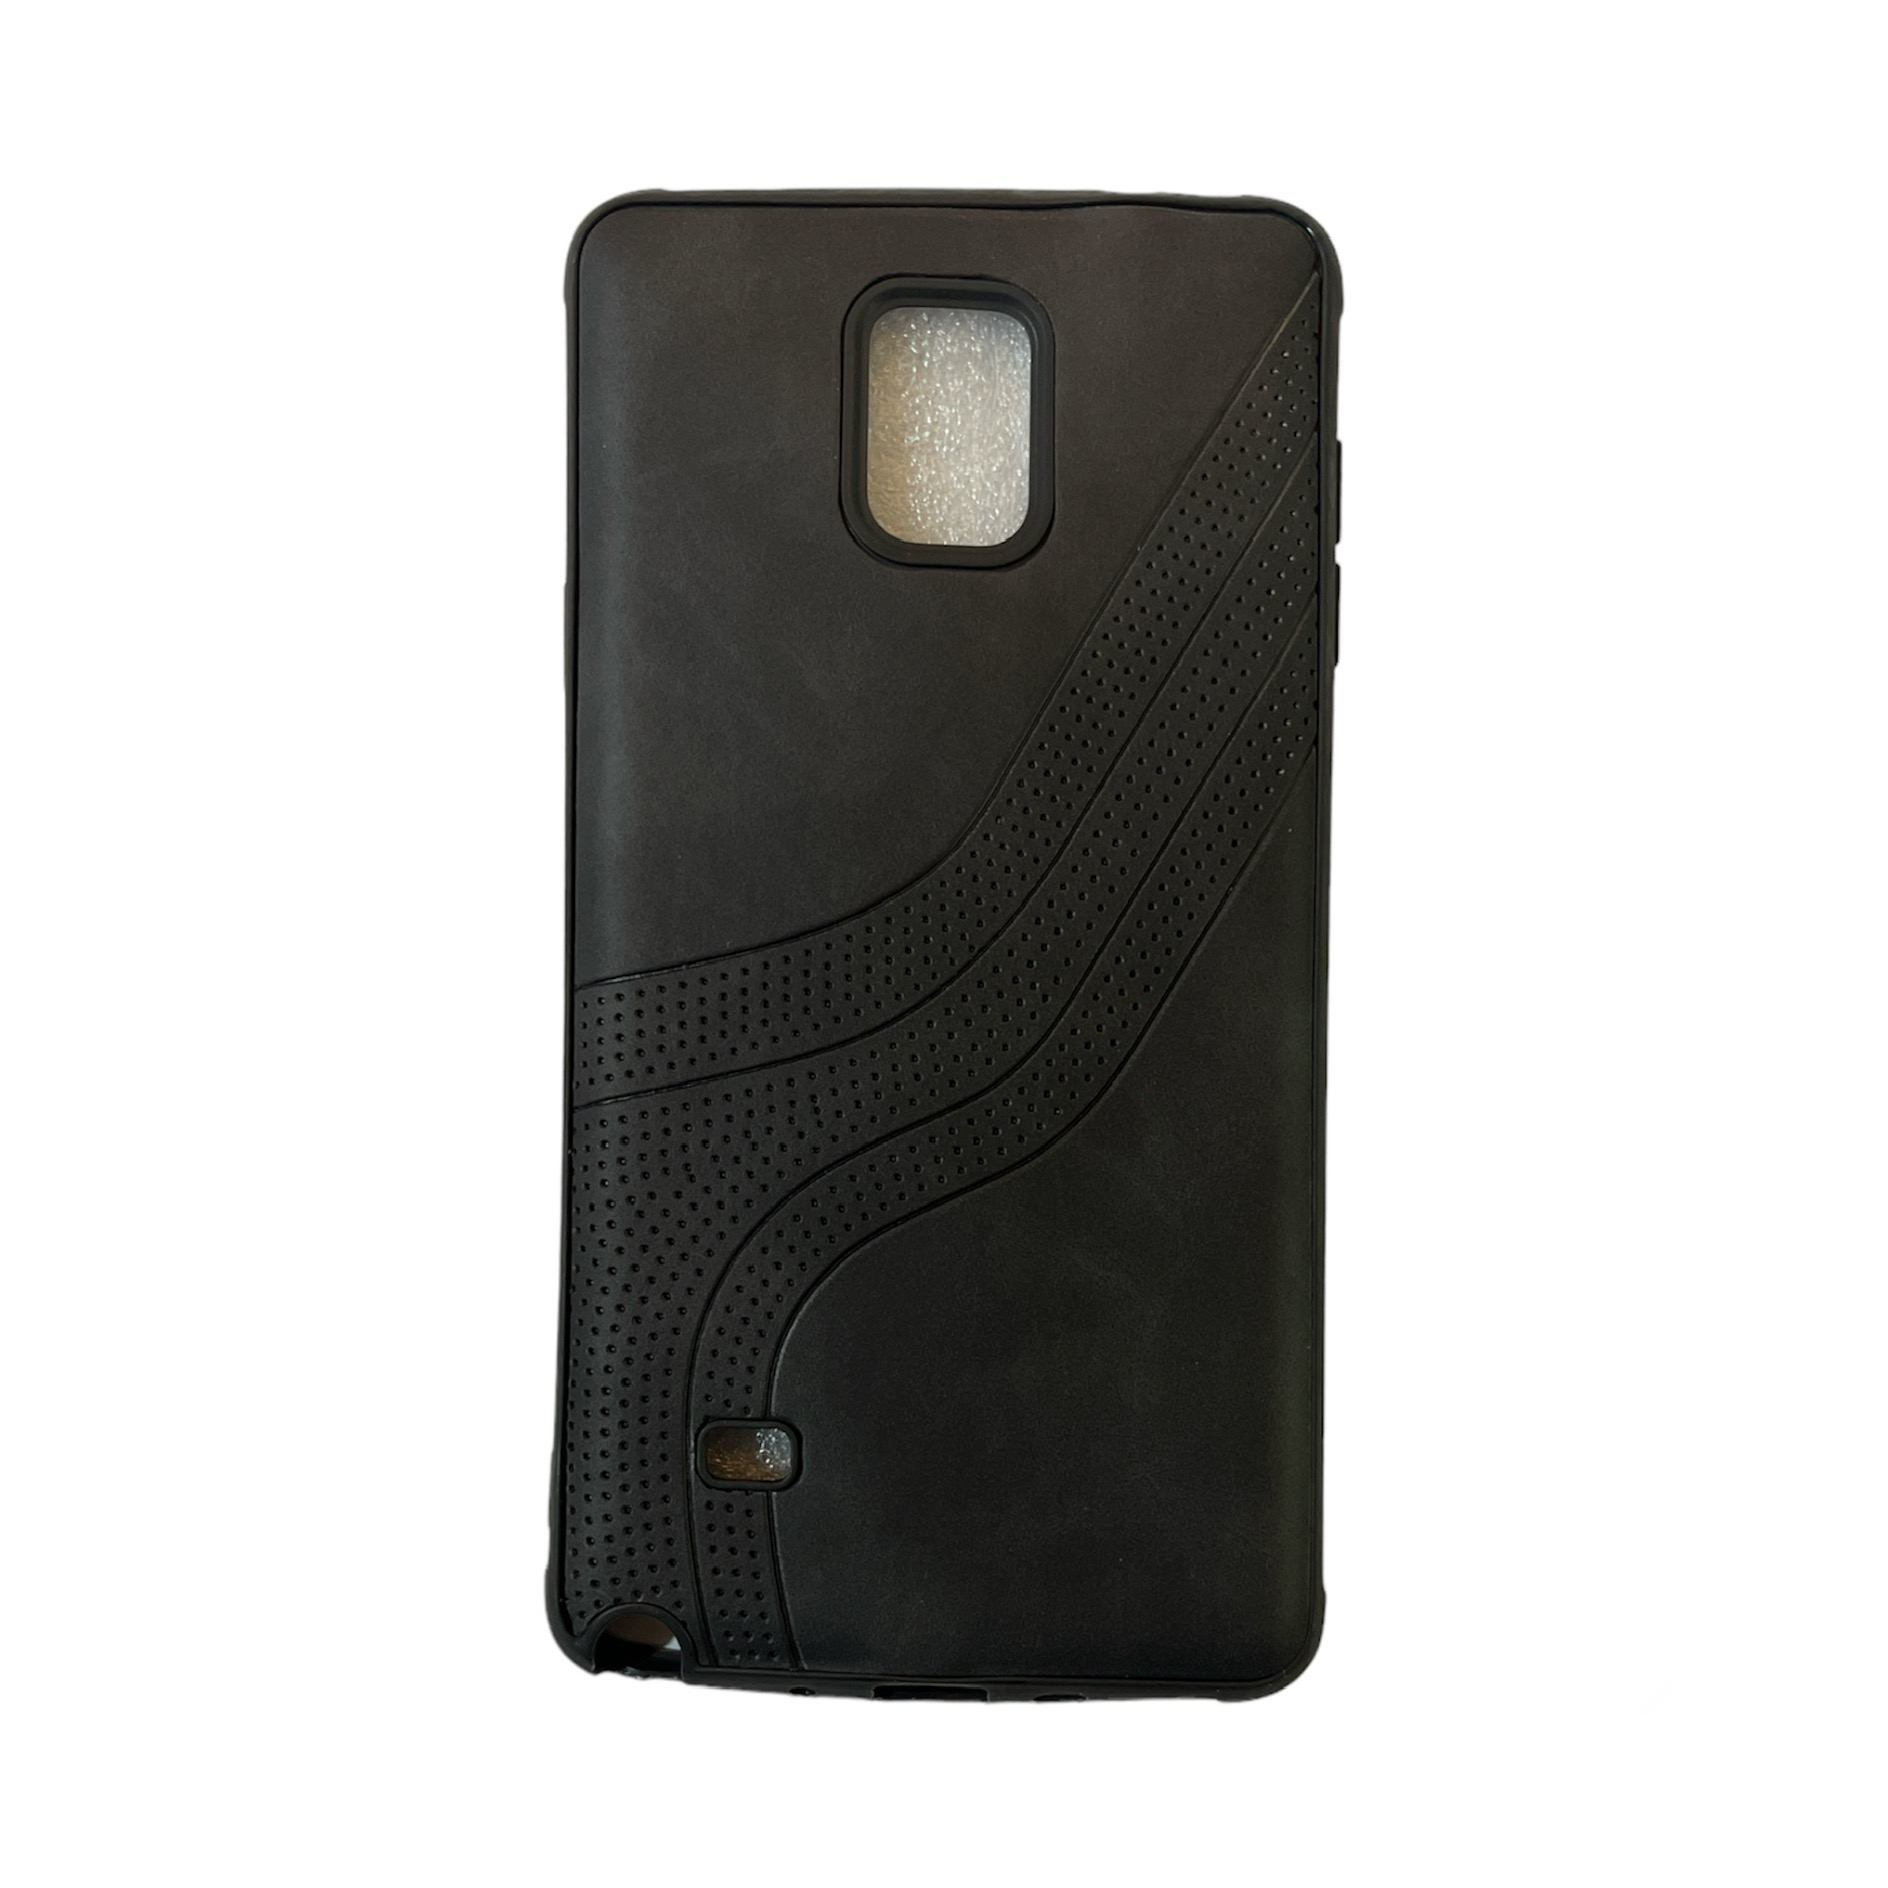 کاور مدل d68 مناسب برای گوشی موبایل سامسونگ Galaxy Note 4